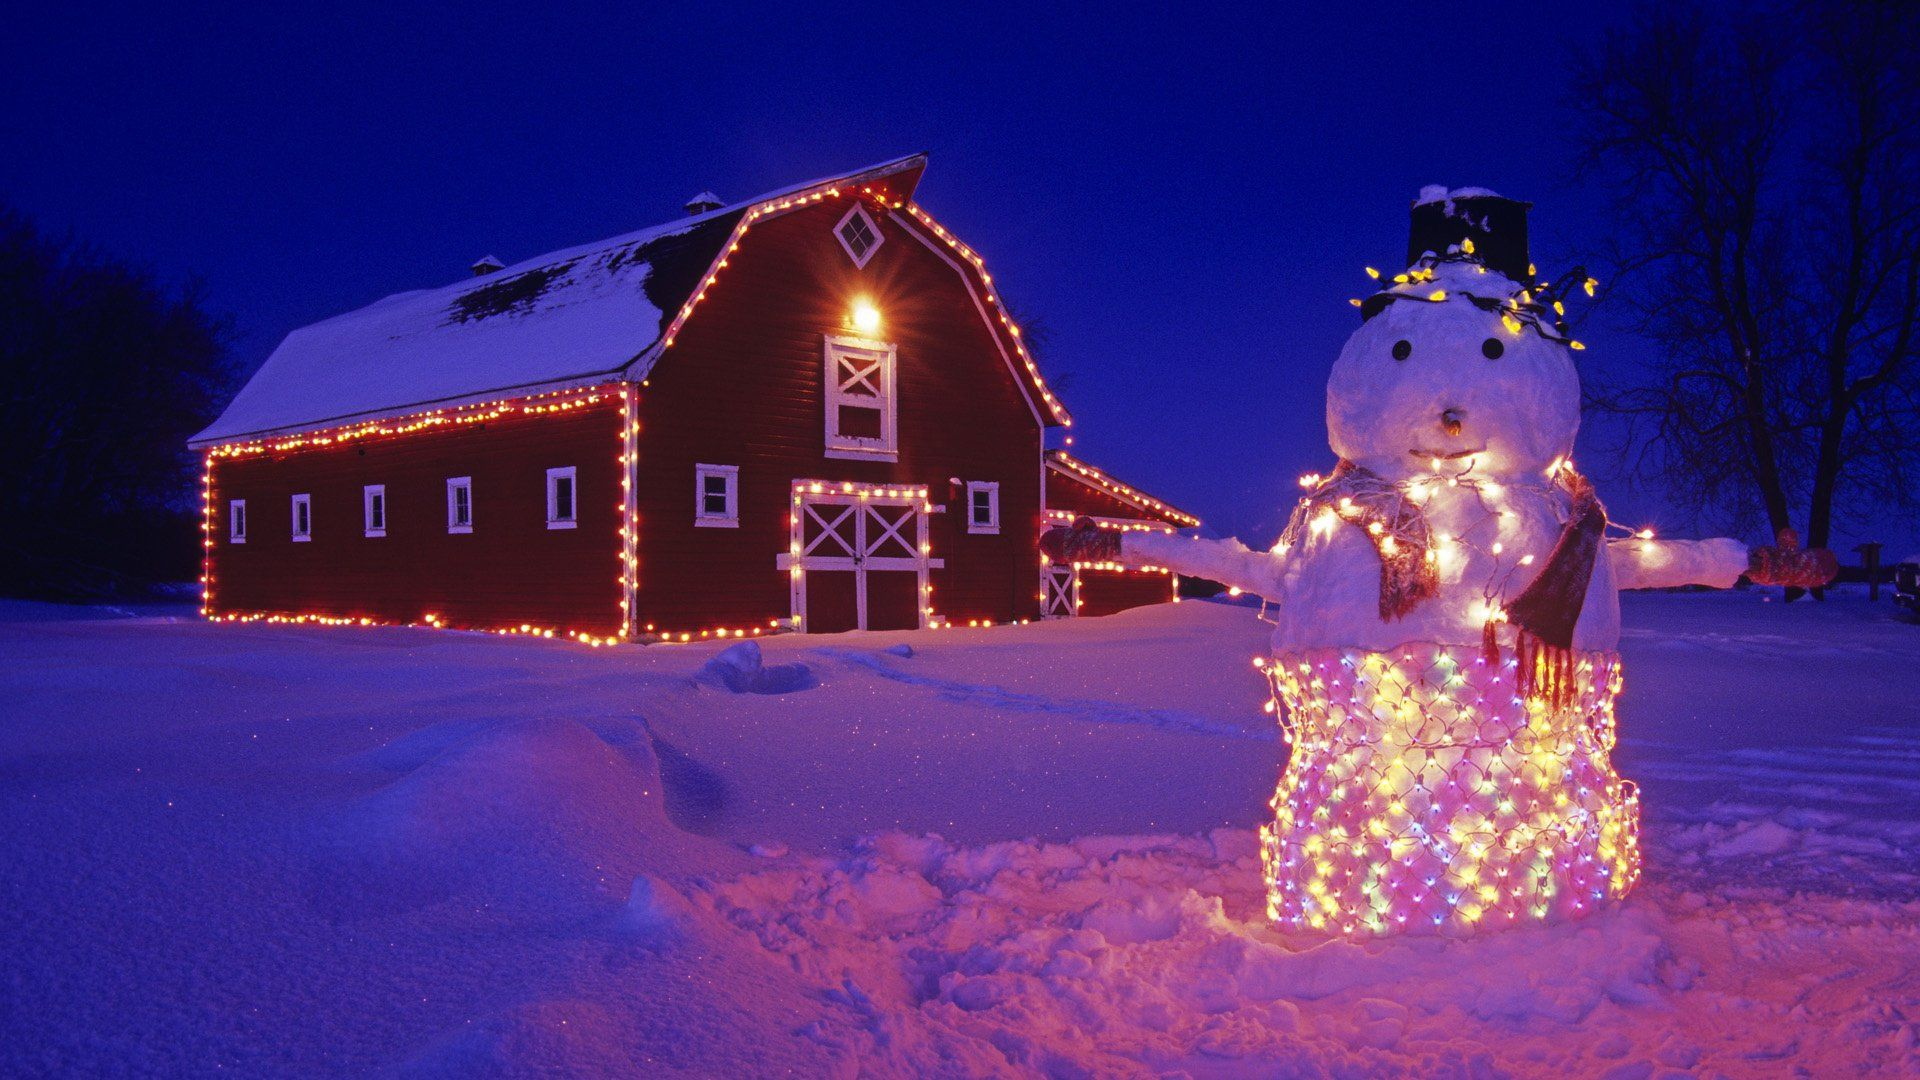 1920x1080 Holiday Christmas Snowman Christmas Lights Barn Night Snow Winter Wall&acirc;&#128;&brvbar; | Christmas wallpaper hd, Decorating with christmas lights, Christmas wallpaper backgrounds